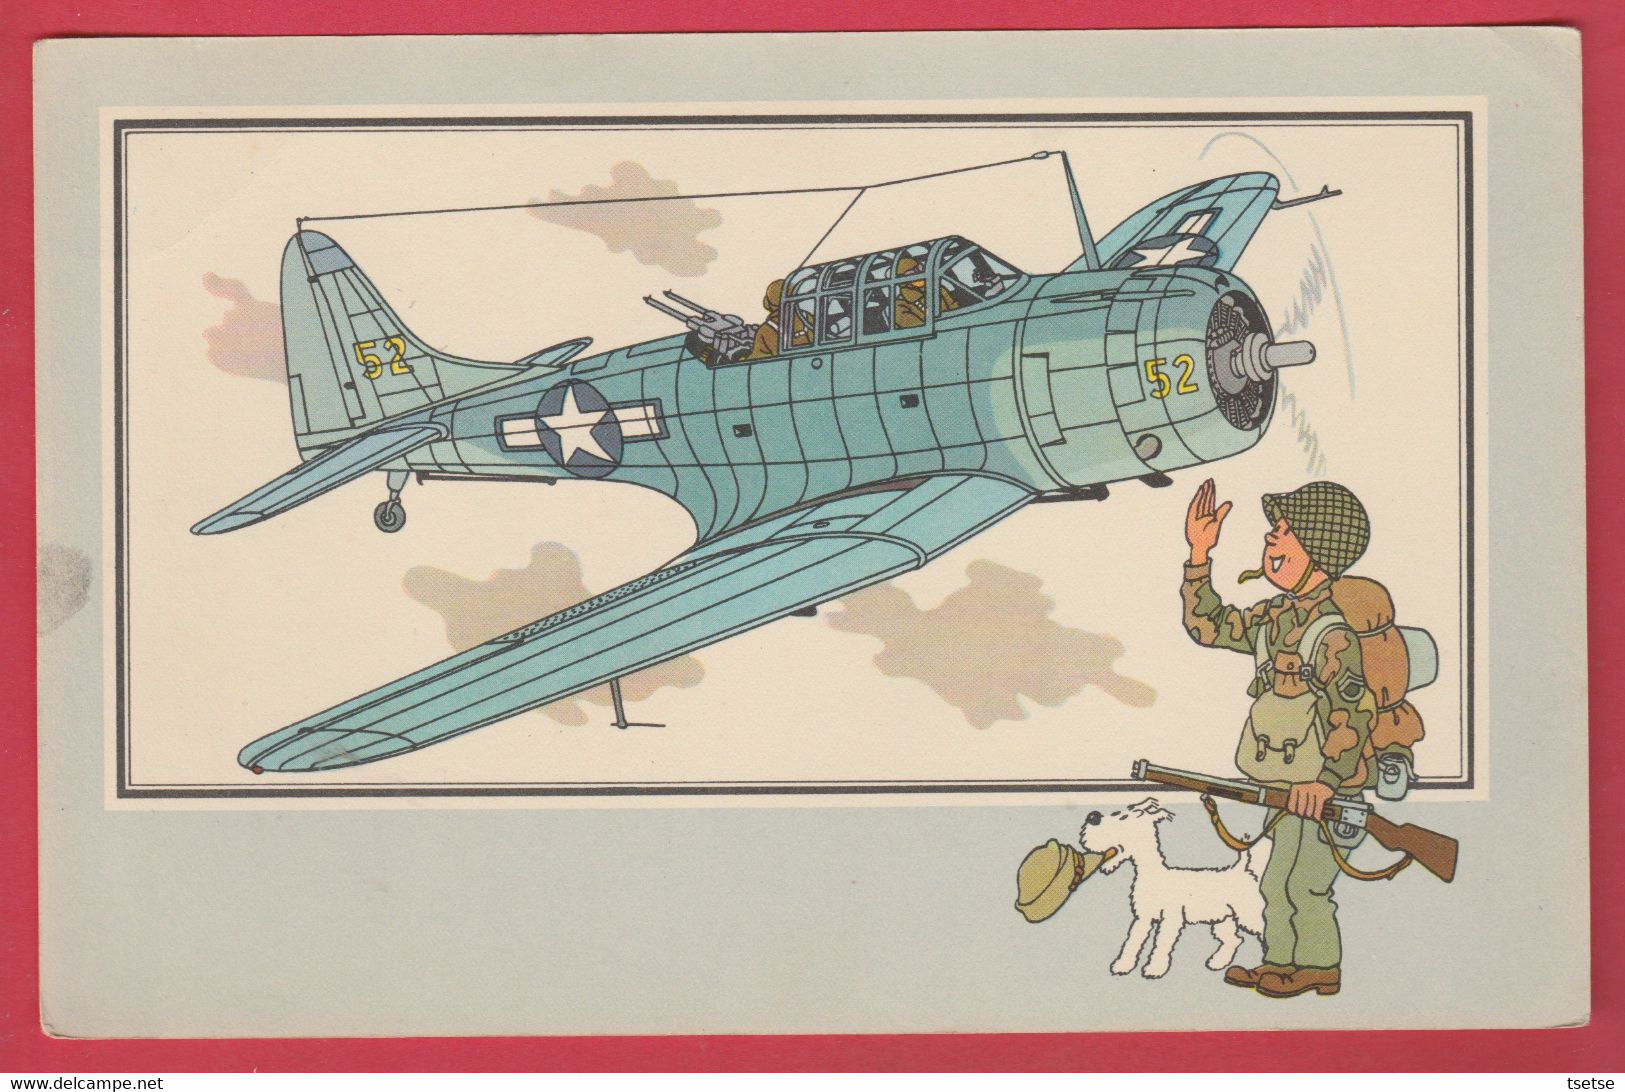 TINTIN / Hergé Et L'Aviation De La Guerre 1939-45 - Douglas A-24 " Dauntless  -1940 - USA- Casterman 1954 ( Voir Verso ) - Hergé